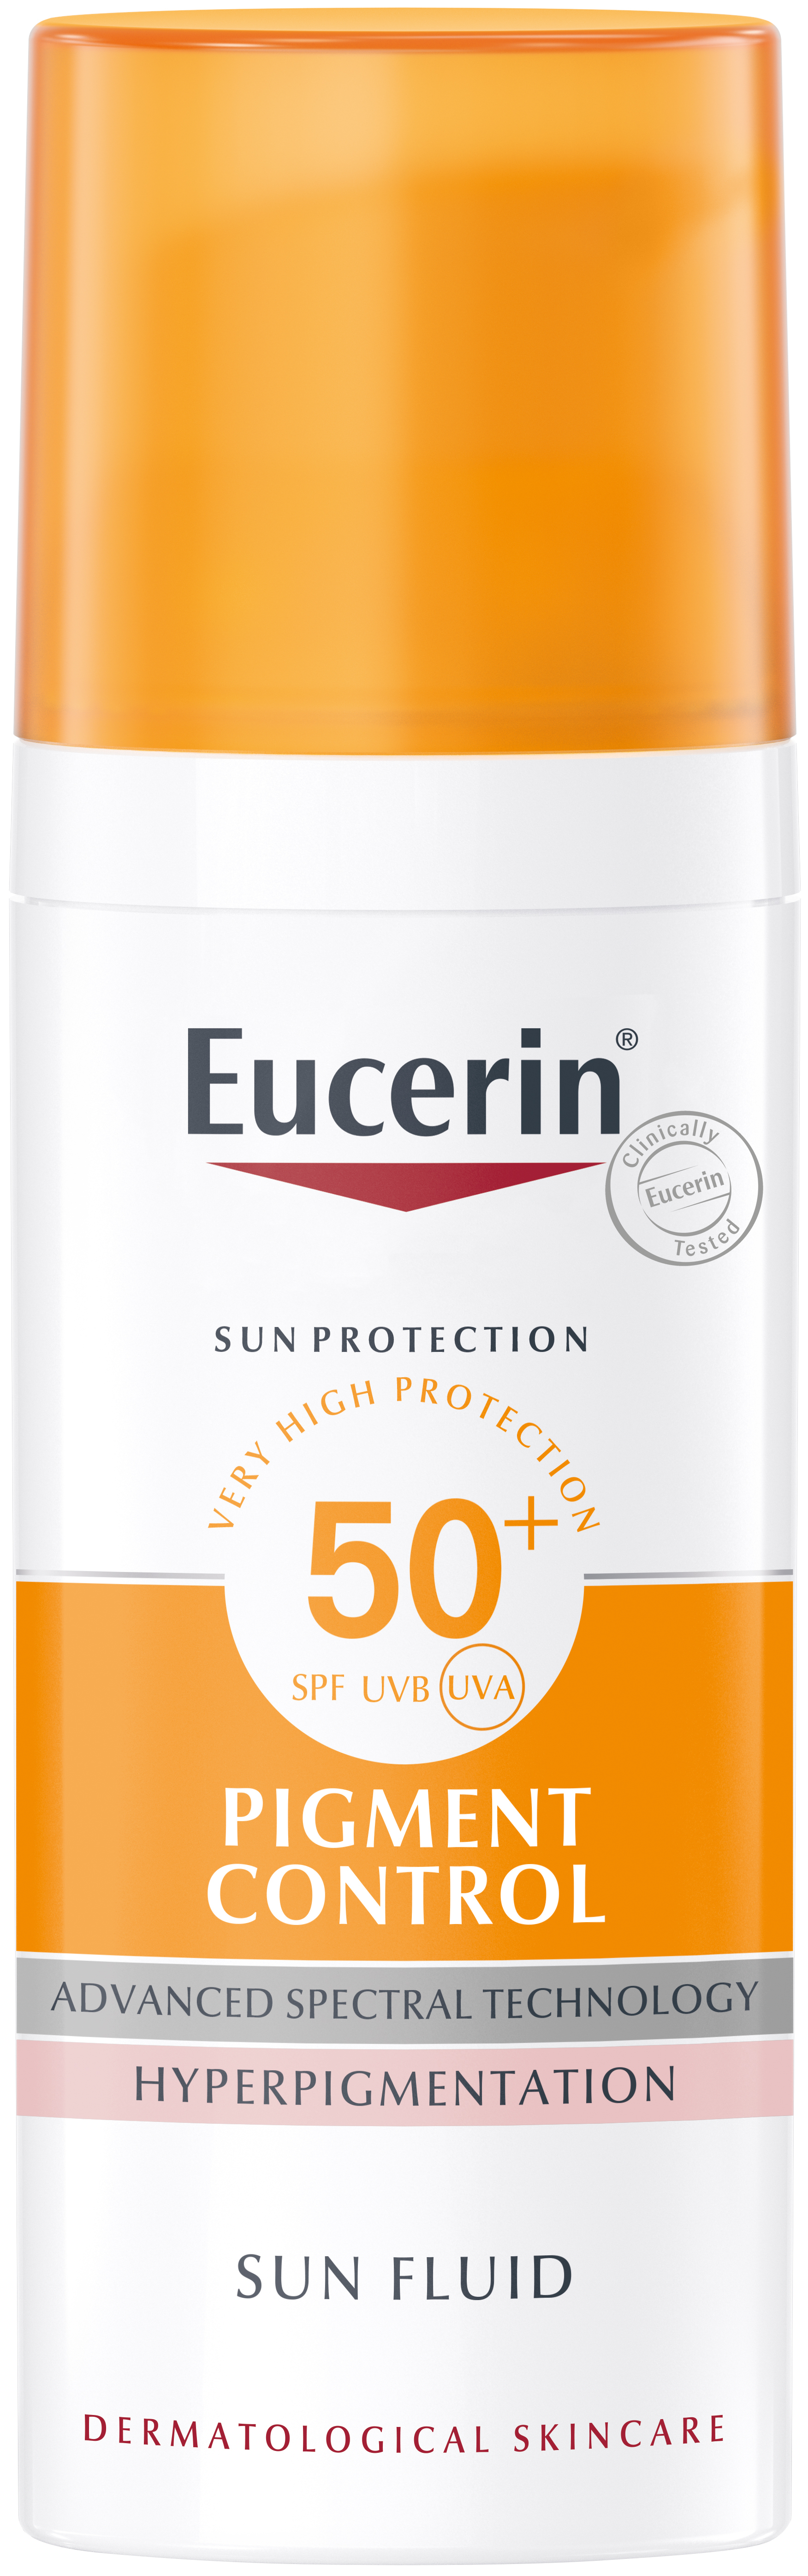 Eucerin Sun Fluid Pigment Control SPF 50+